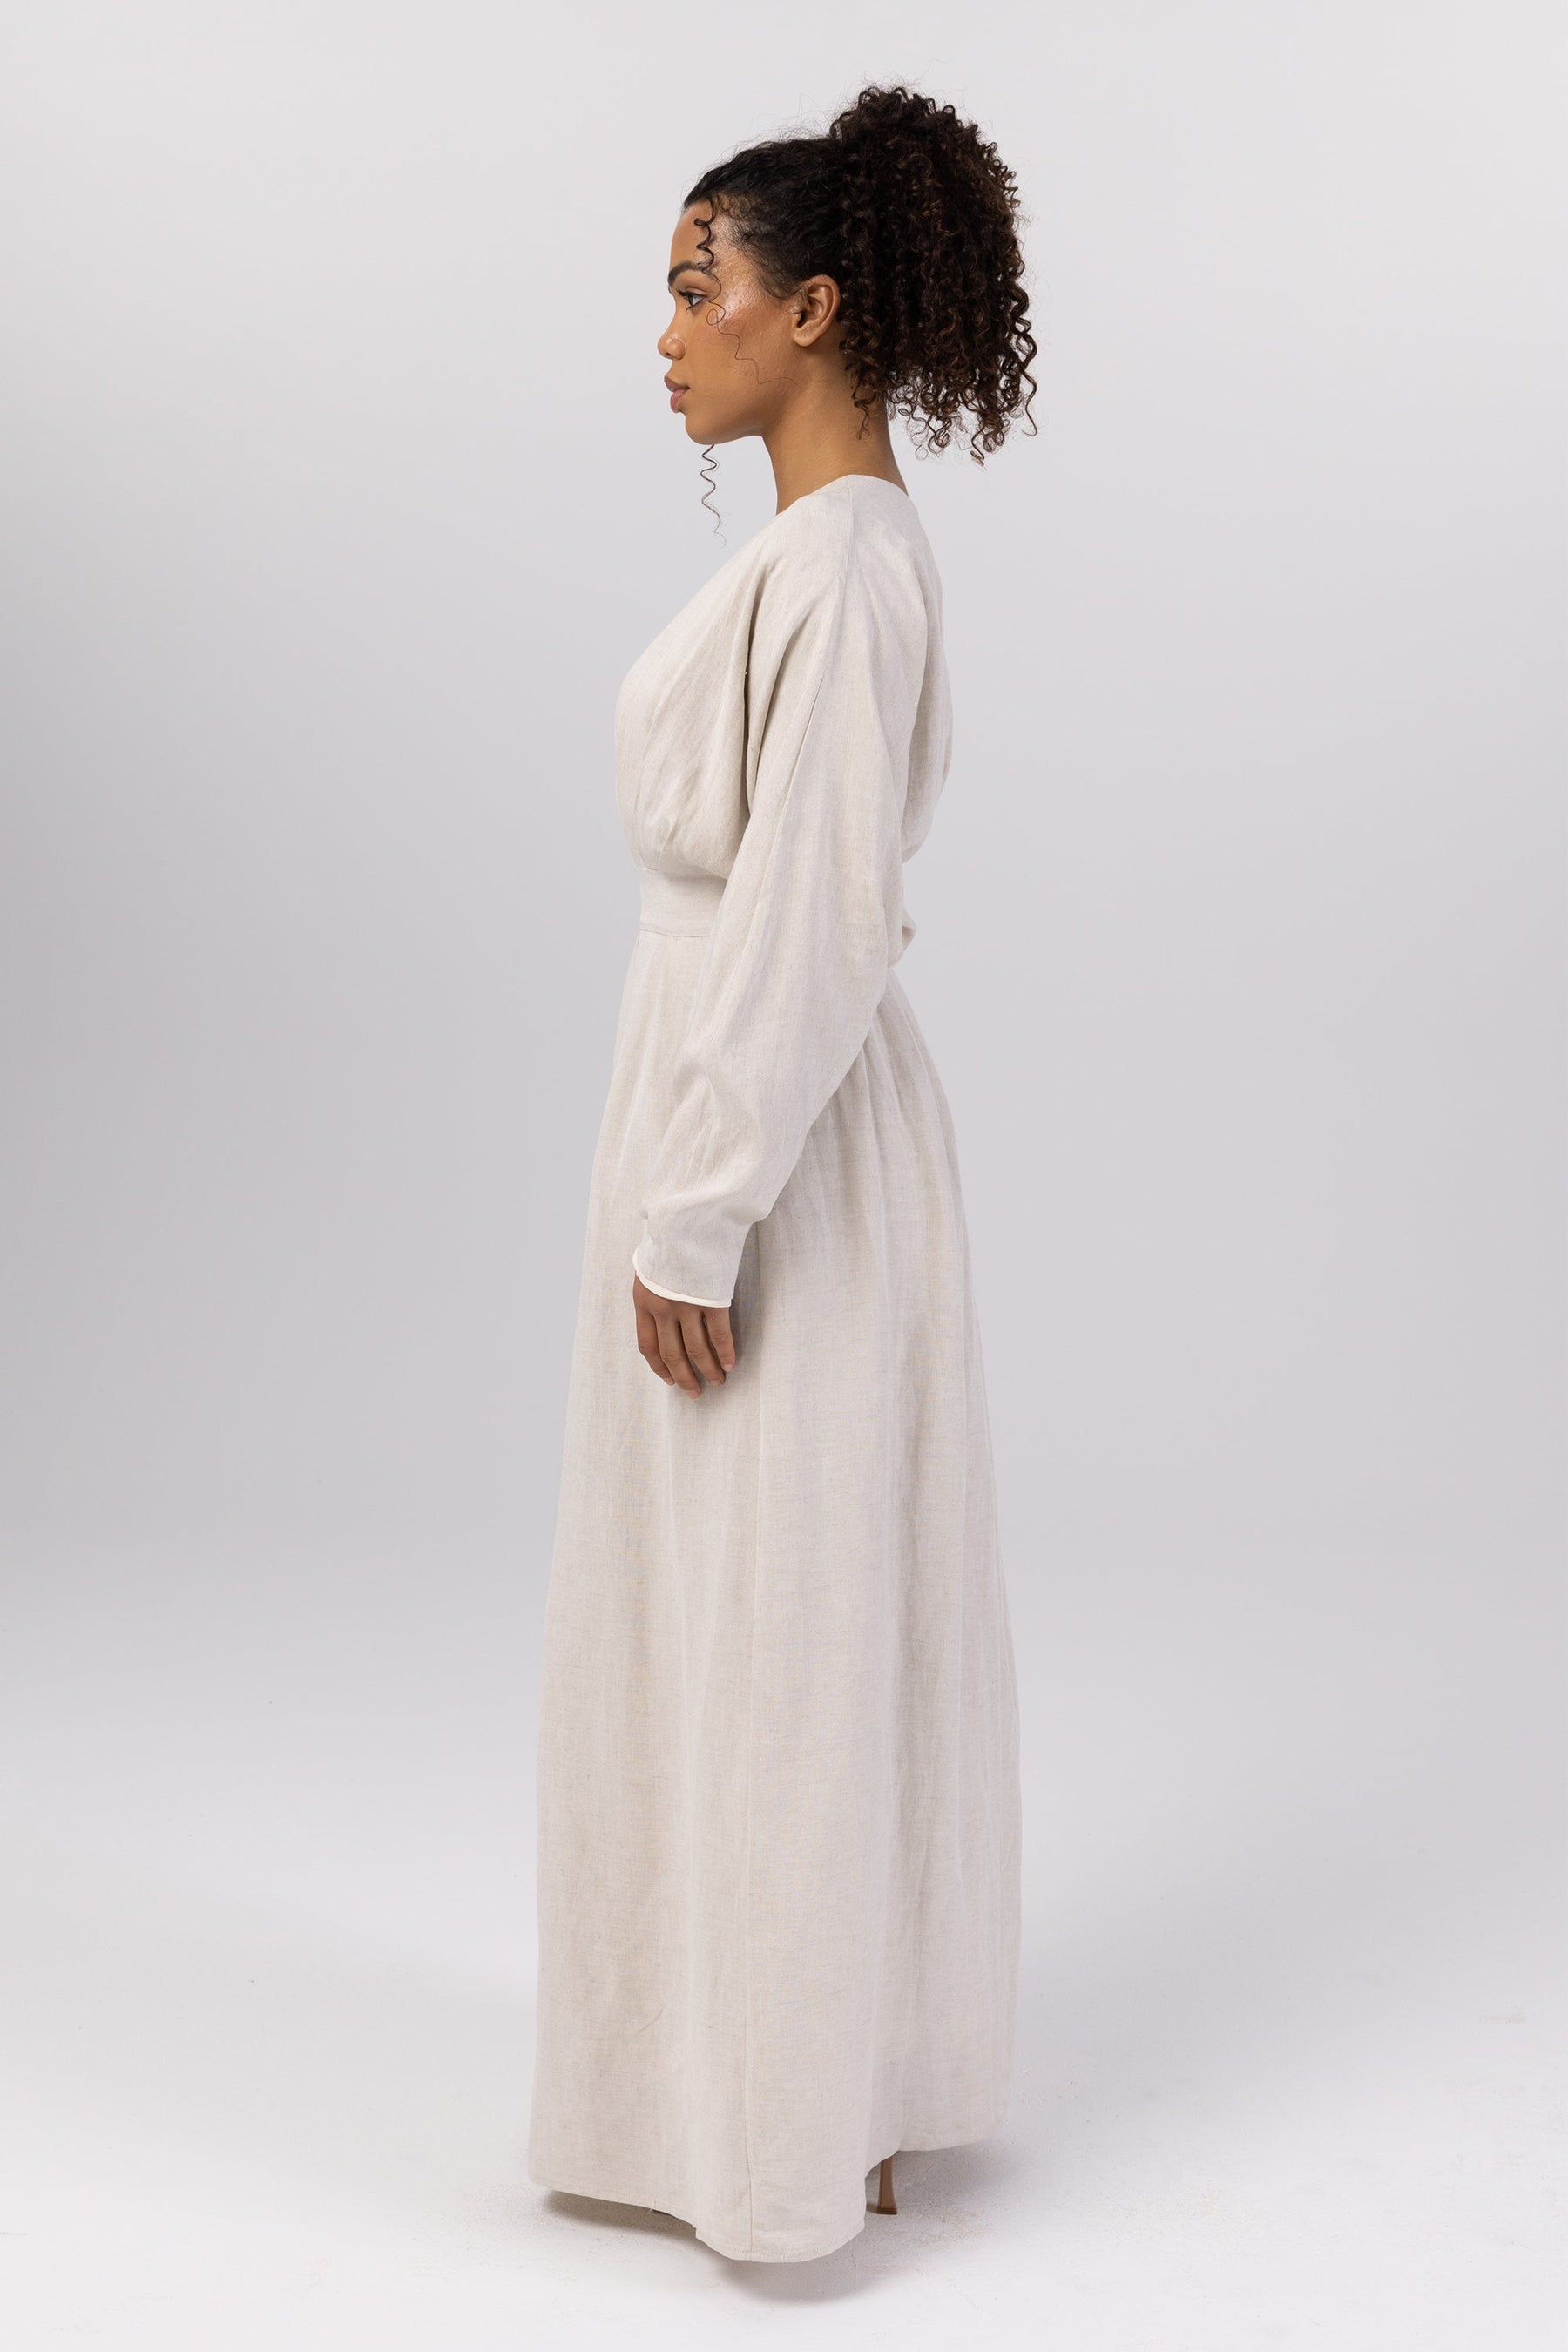 Nasira Linen Pleat Waist Maxi Dress - Off White (Light Grey) Veiled 